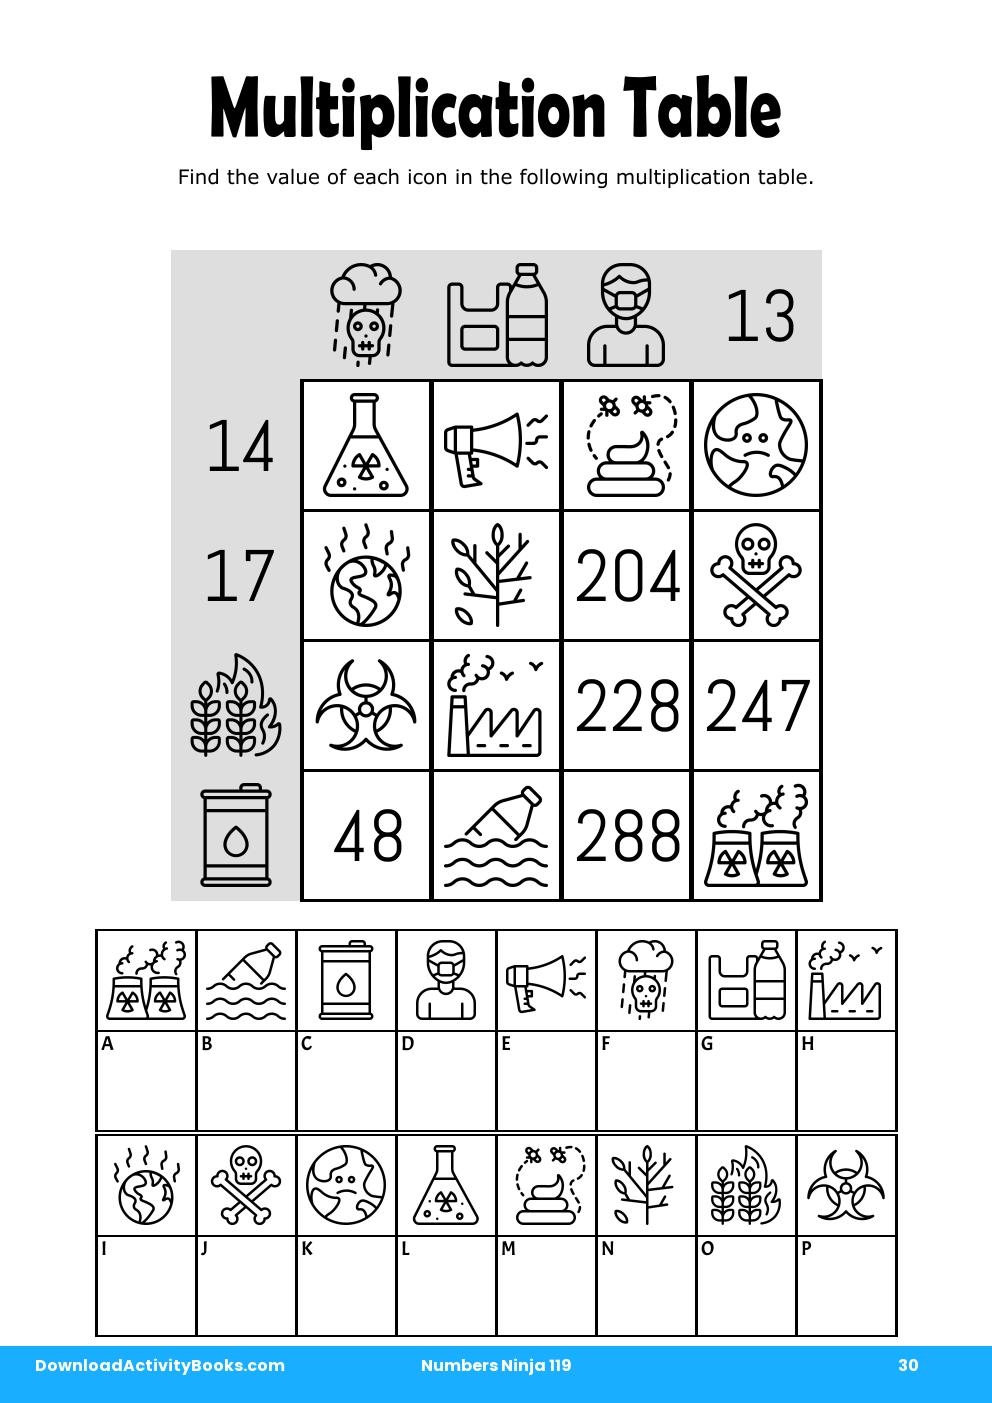 Multiplication Table in Numbers Ninja 119